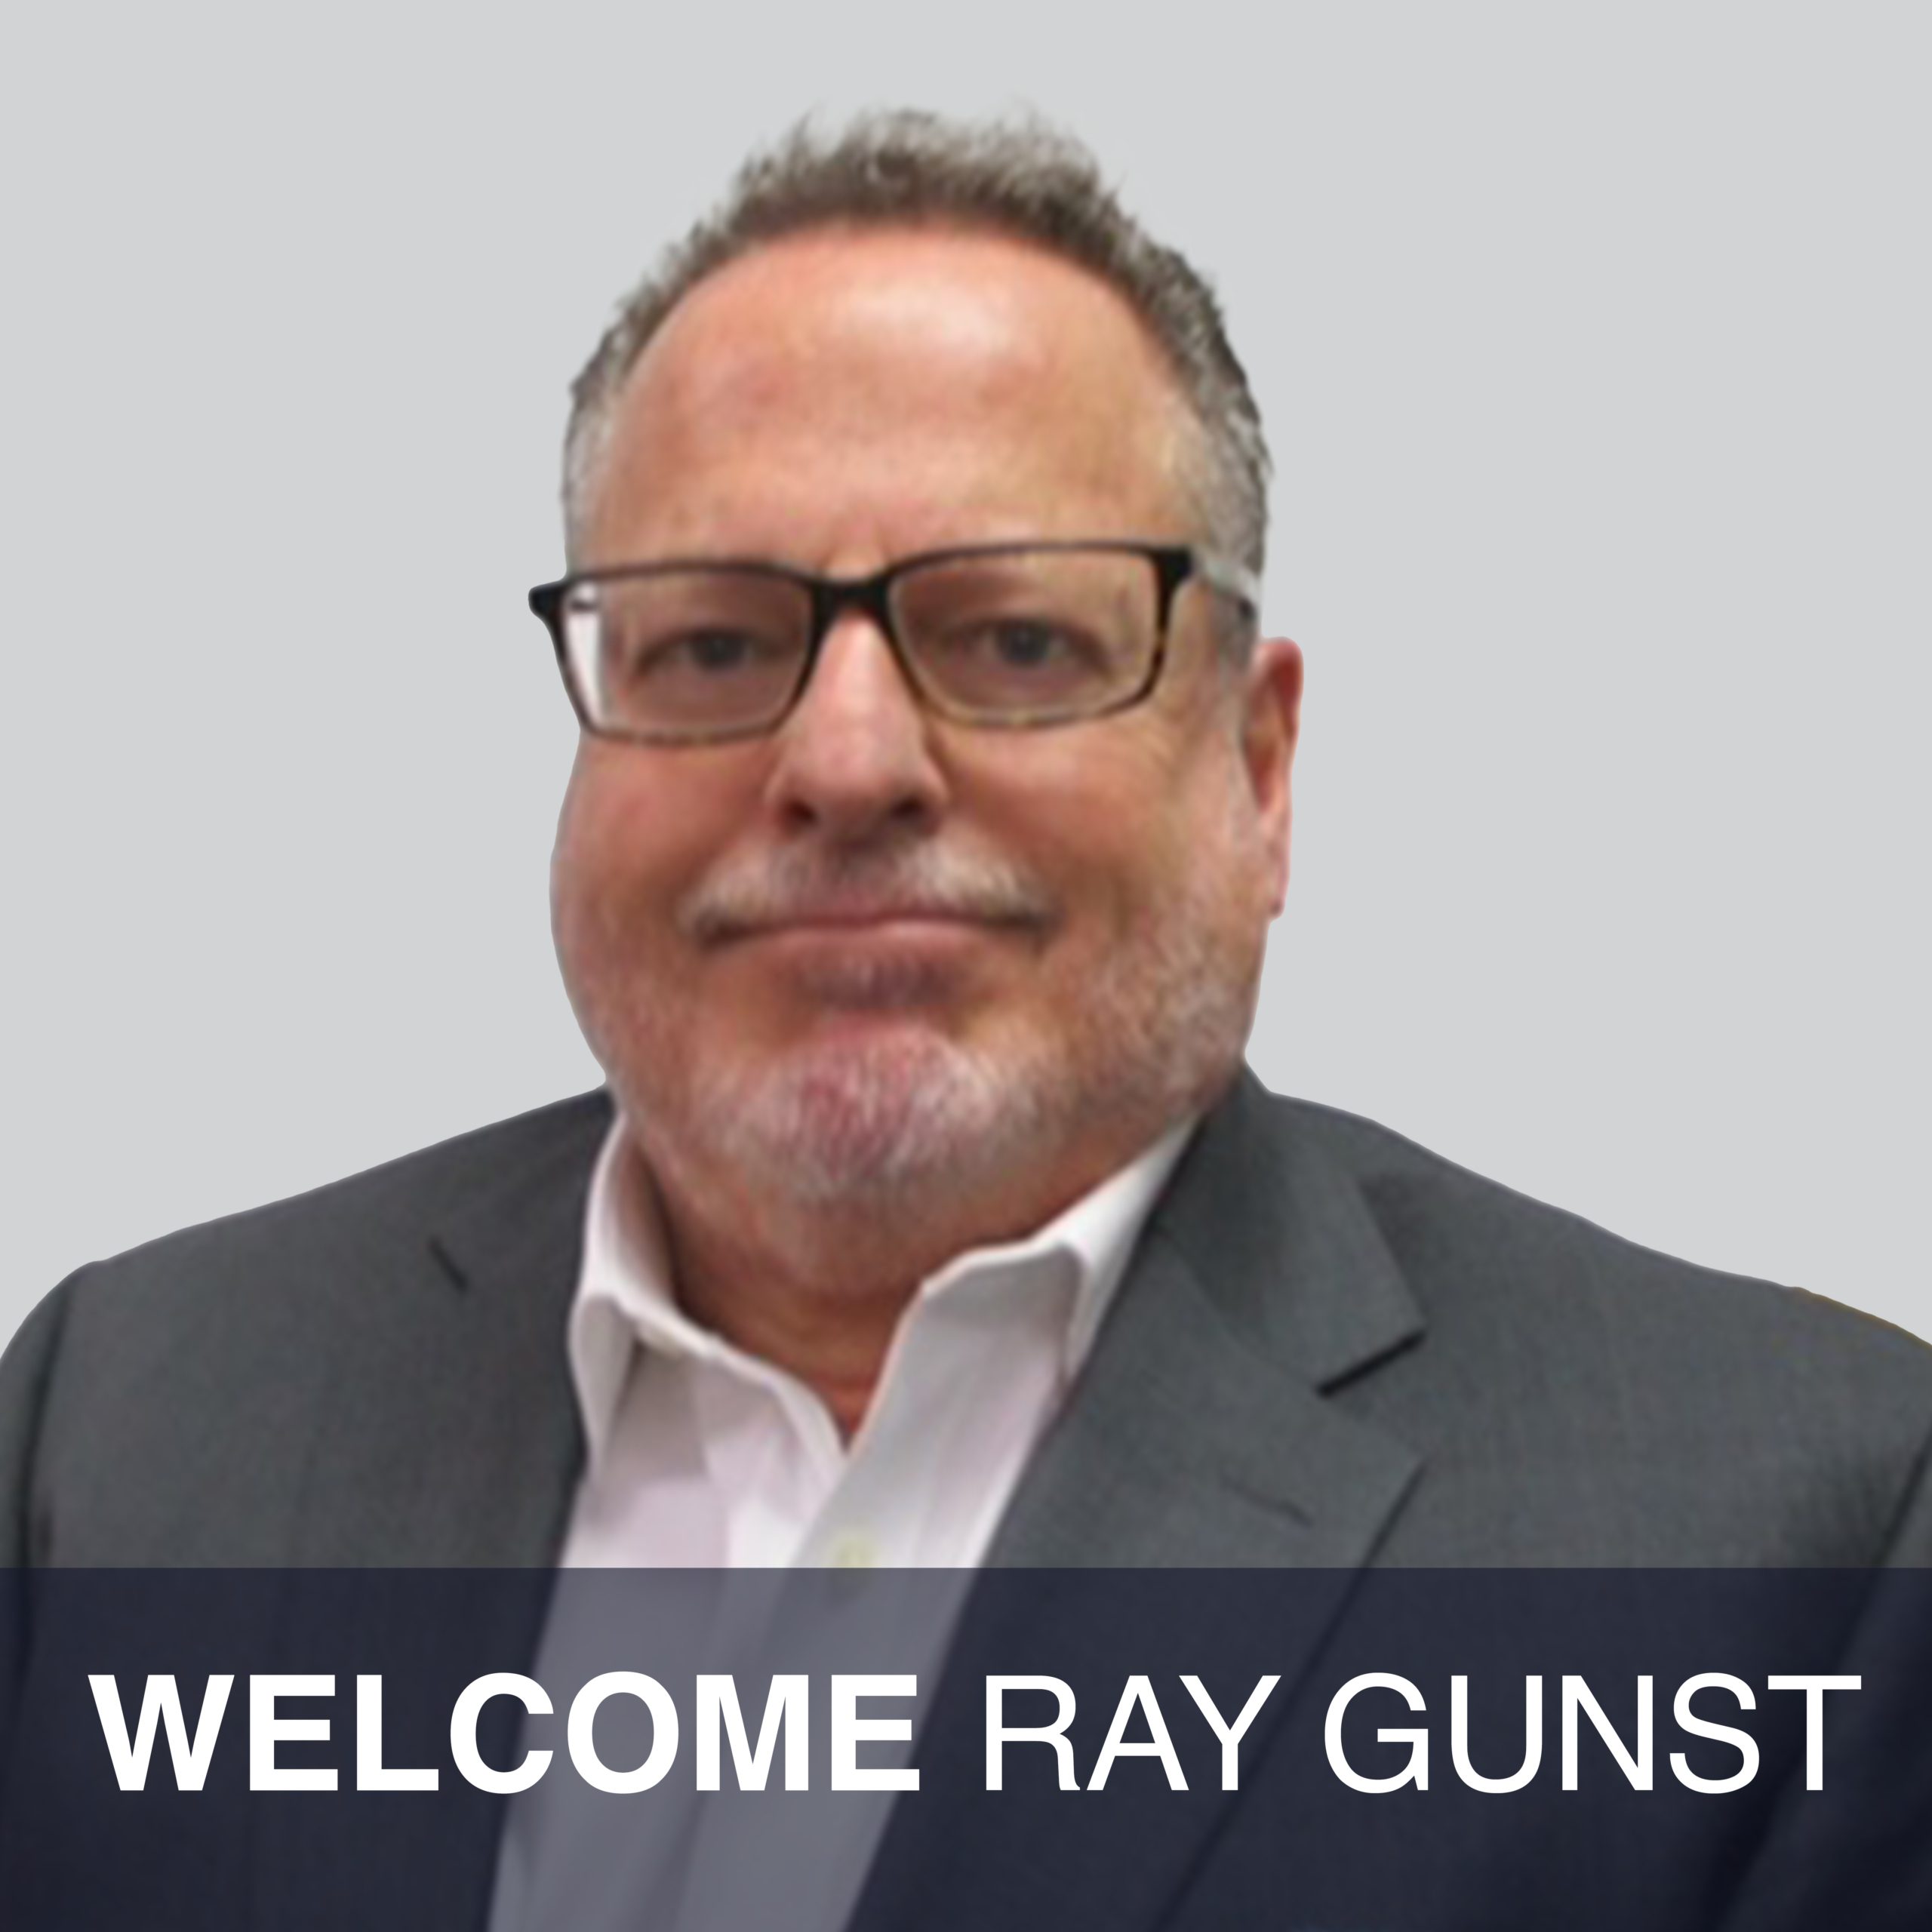 Ray Gunst